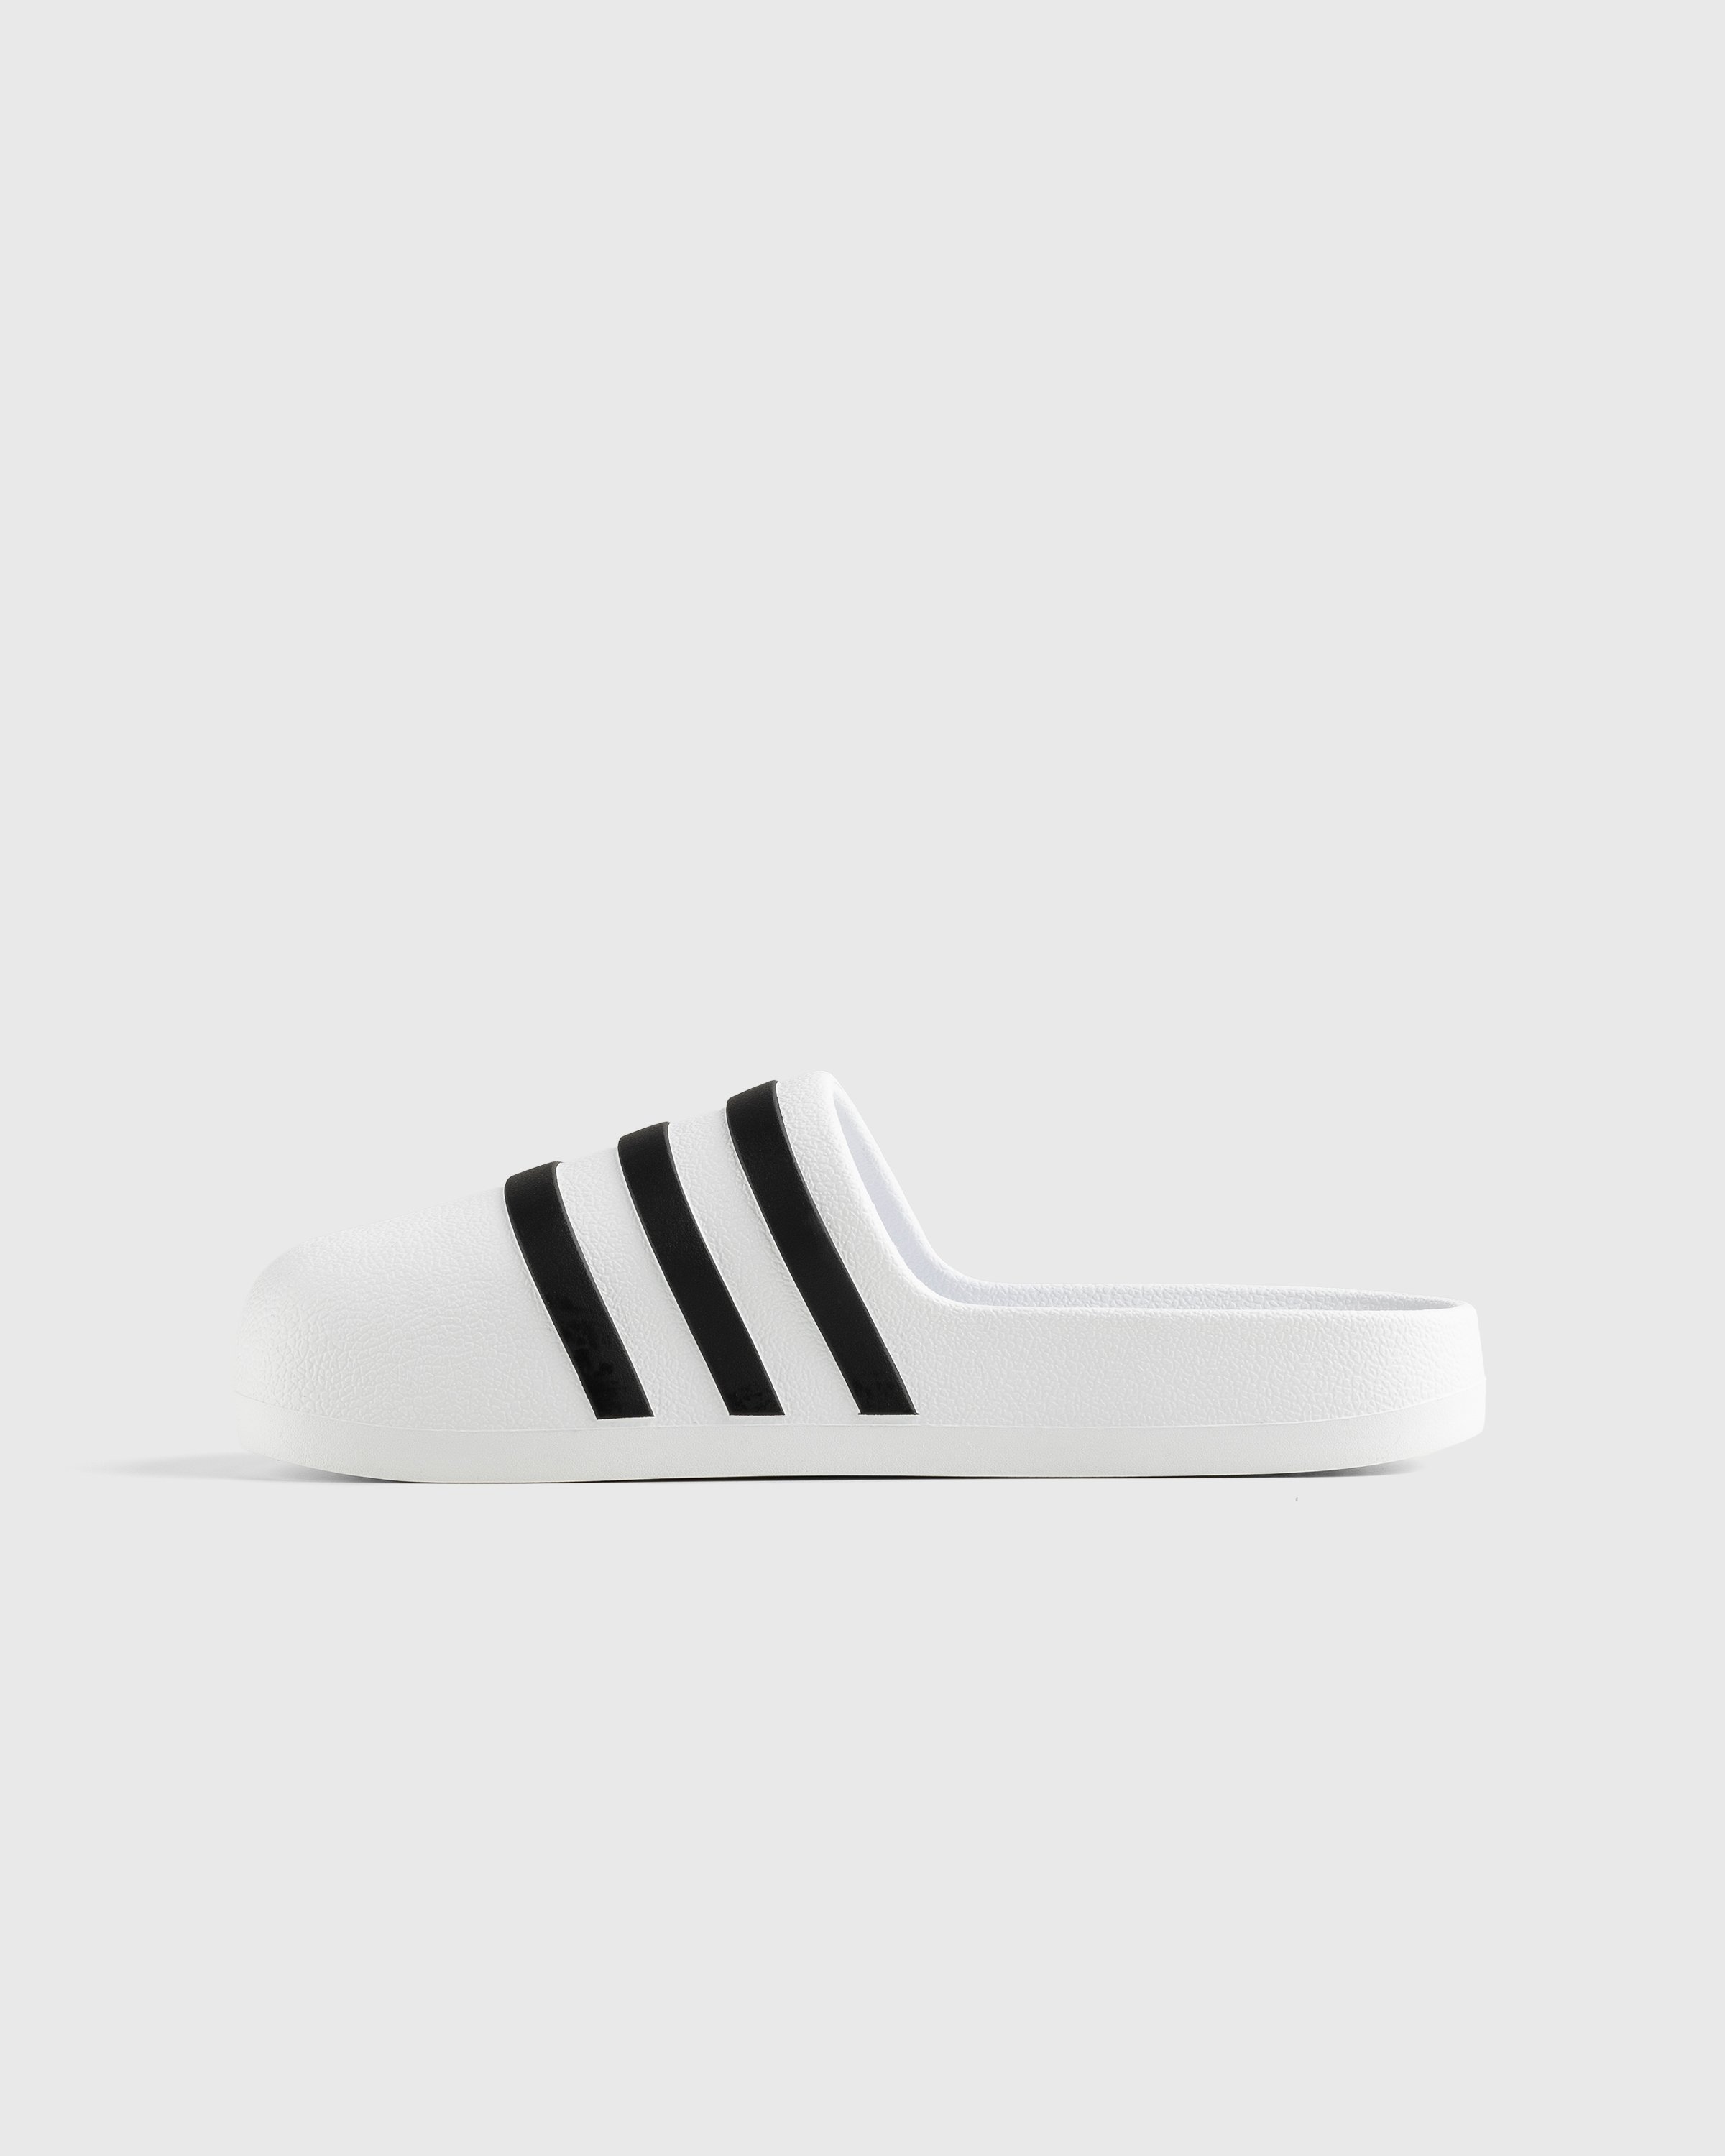 Adidas - Adifom Adilette White/Black/White - Footwear - White - Image 2